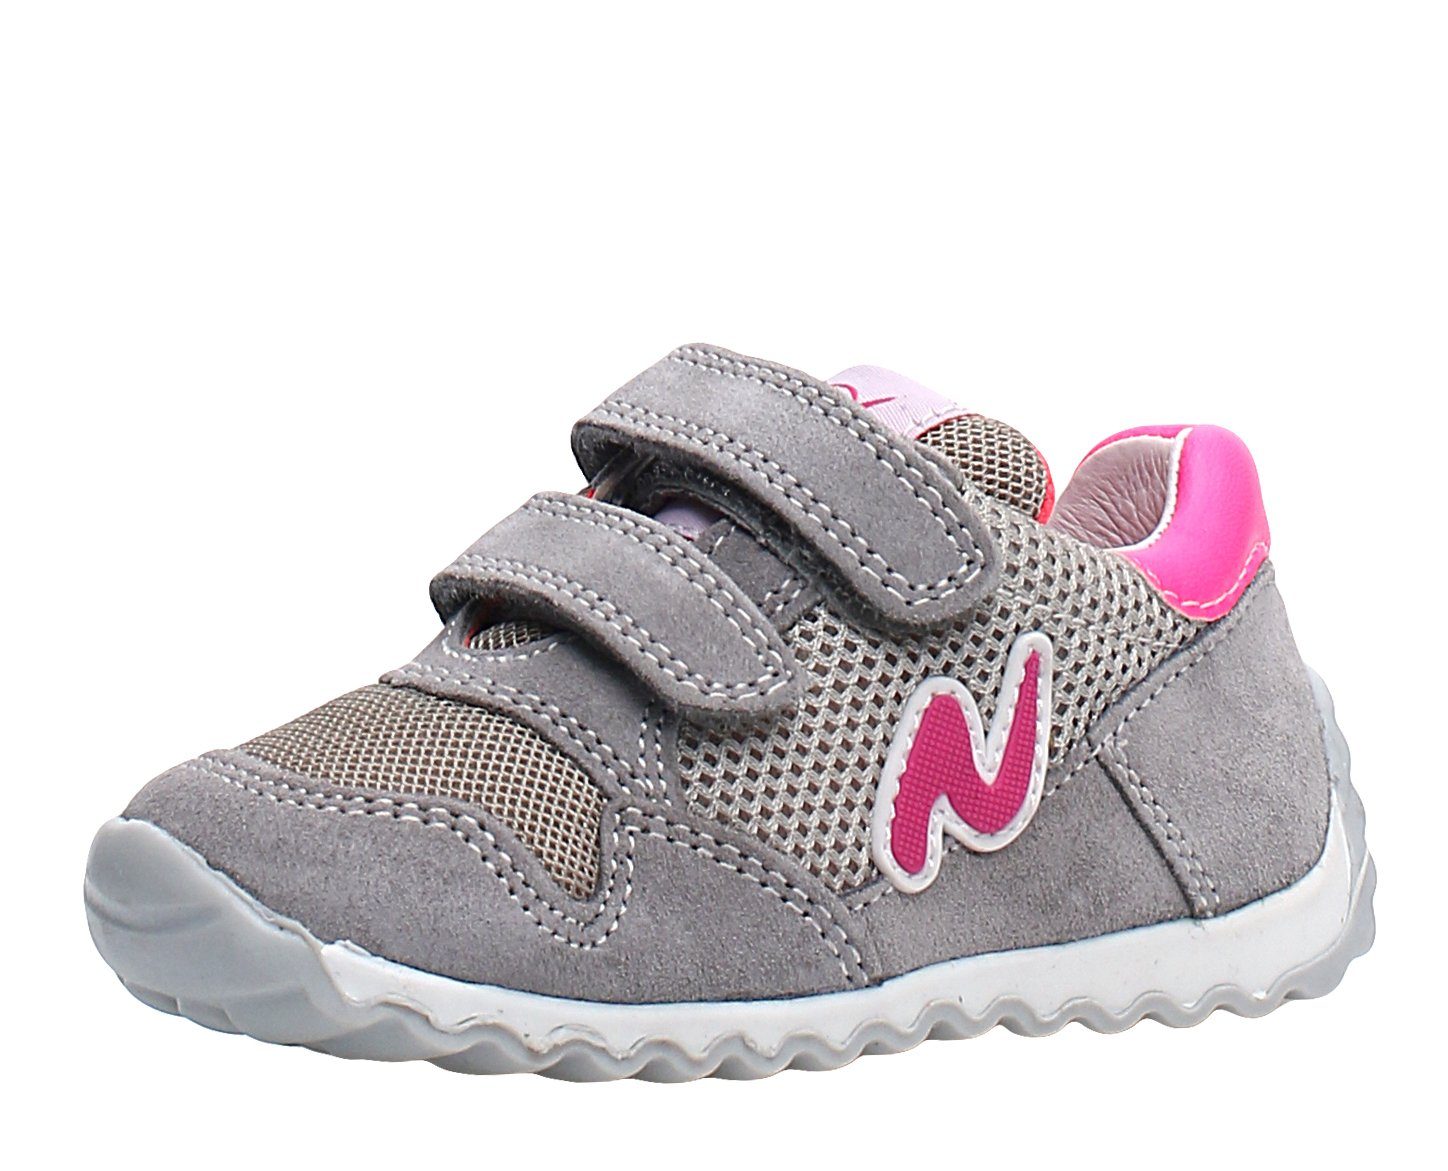 Naturino Naturino Sneaker Sammy für Mädchen mit Lederfutter 1B43 Grau Sneaker